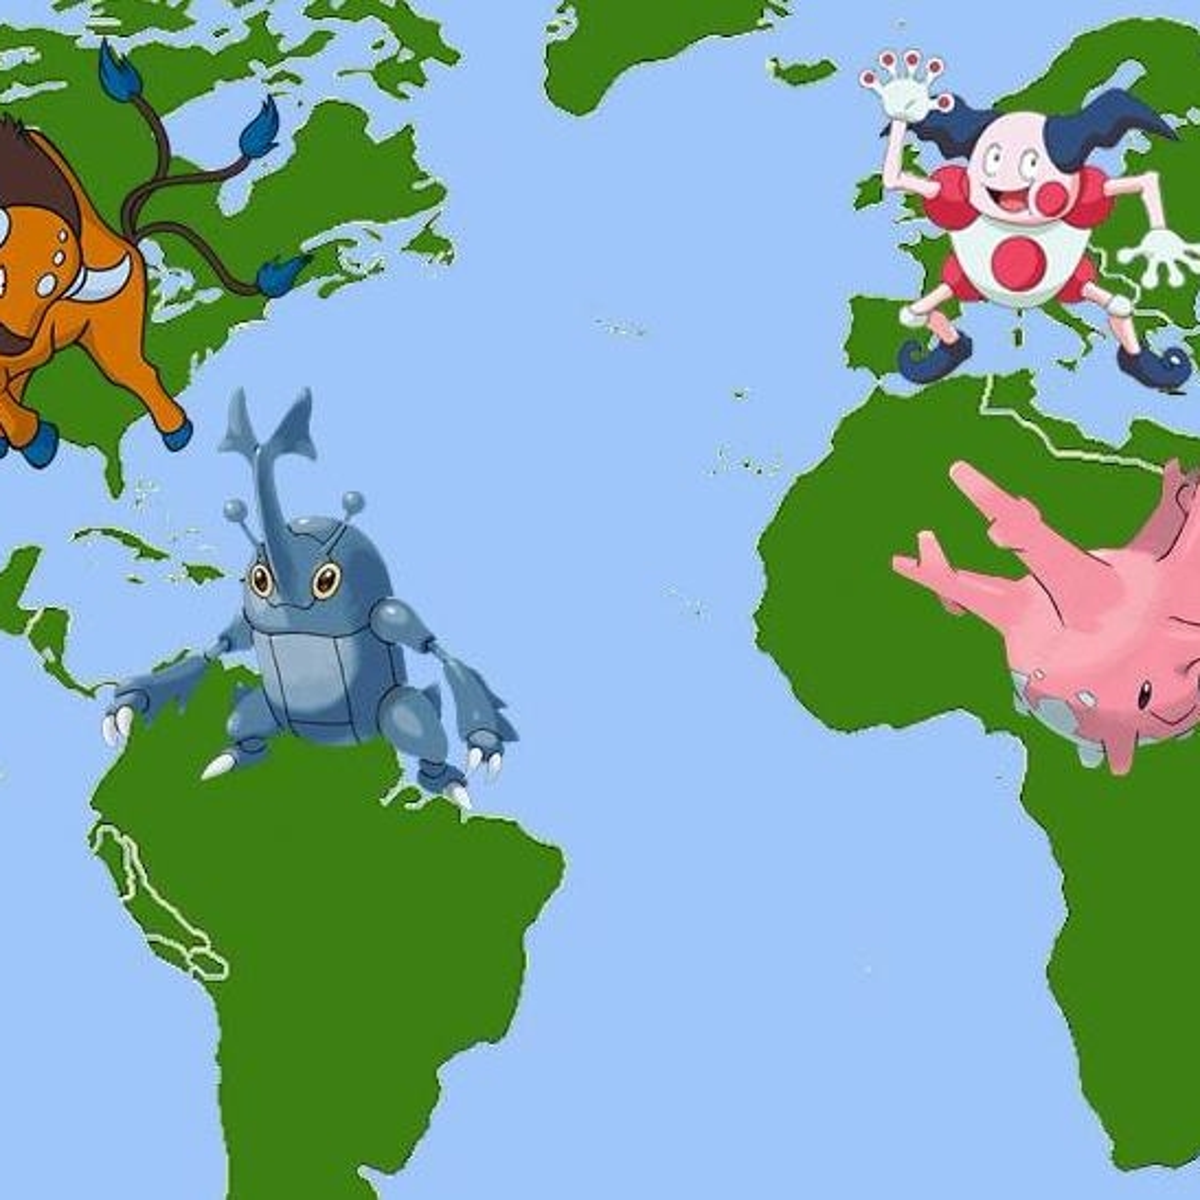 Pokémon Go - como apanhar os Pokémon Exclusivos Tauros, Kangaskhan